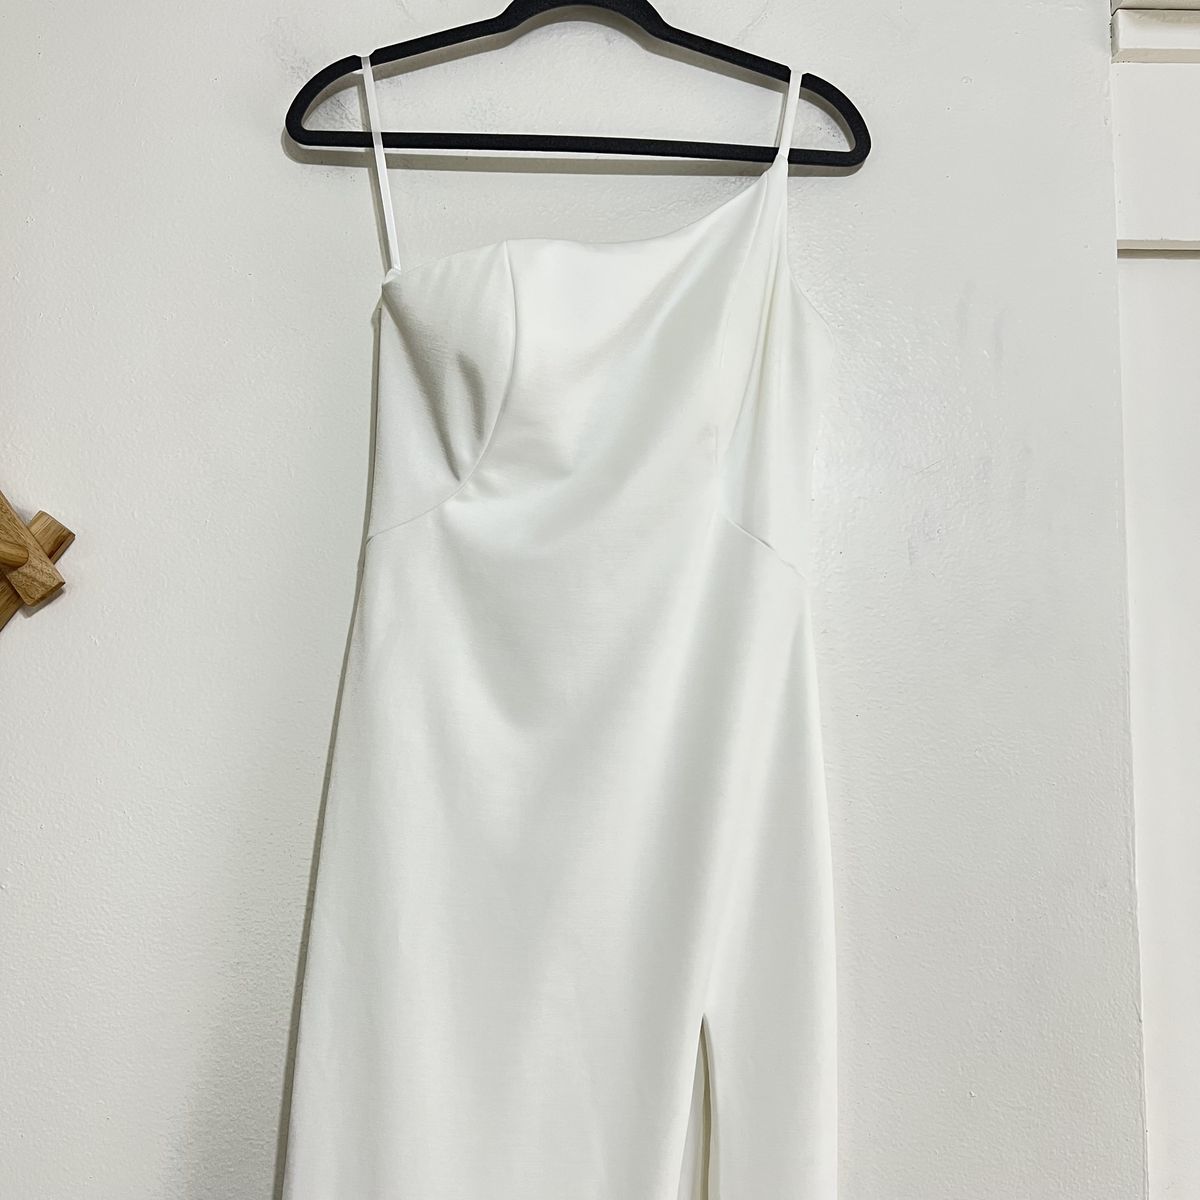 Style 28176 La Femme Size 0 One Shoulder White Side Slit Dress on Queenly